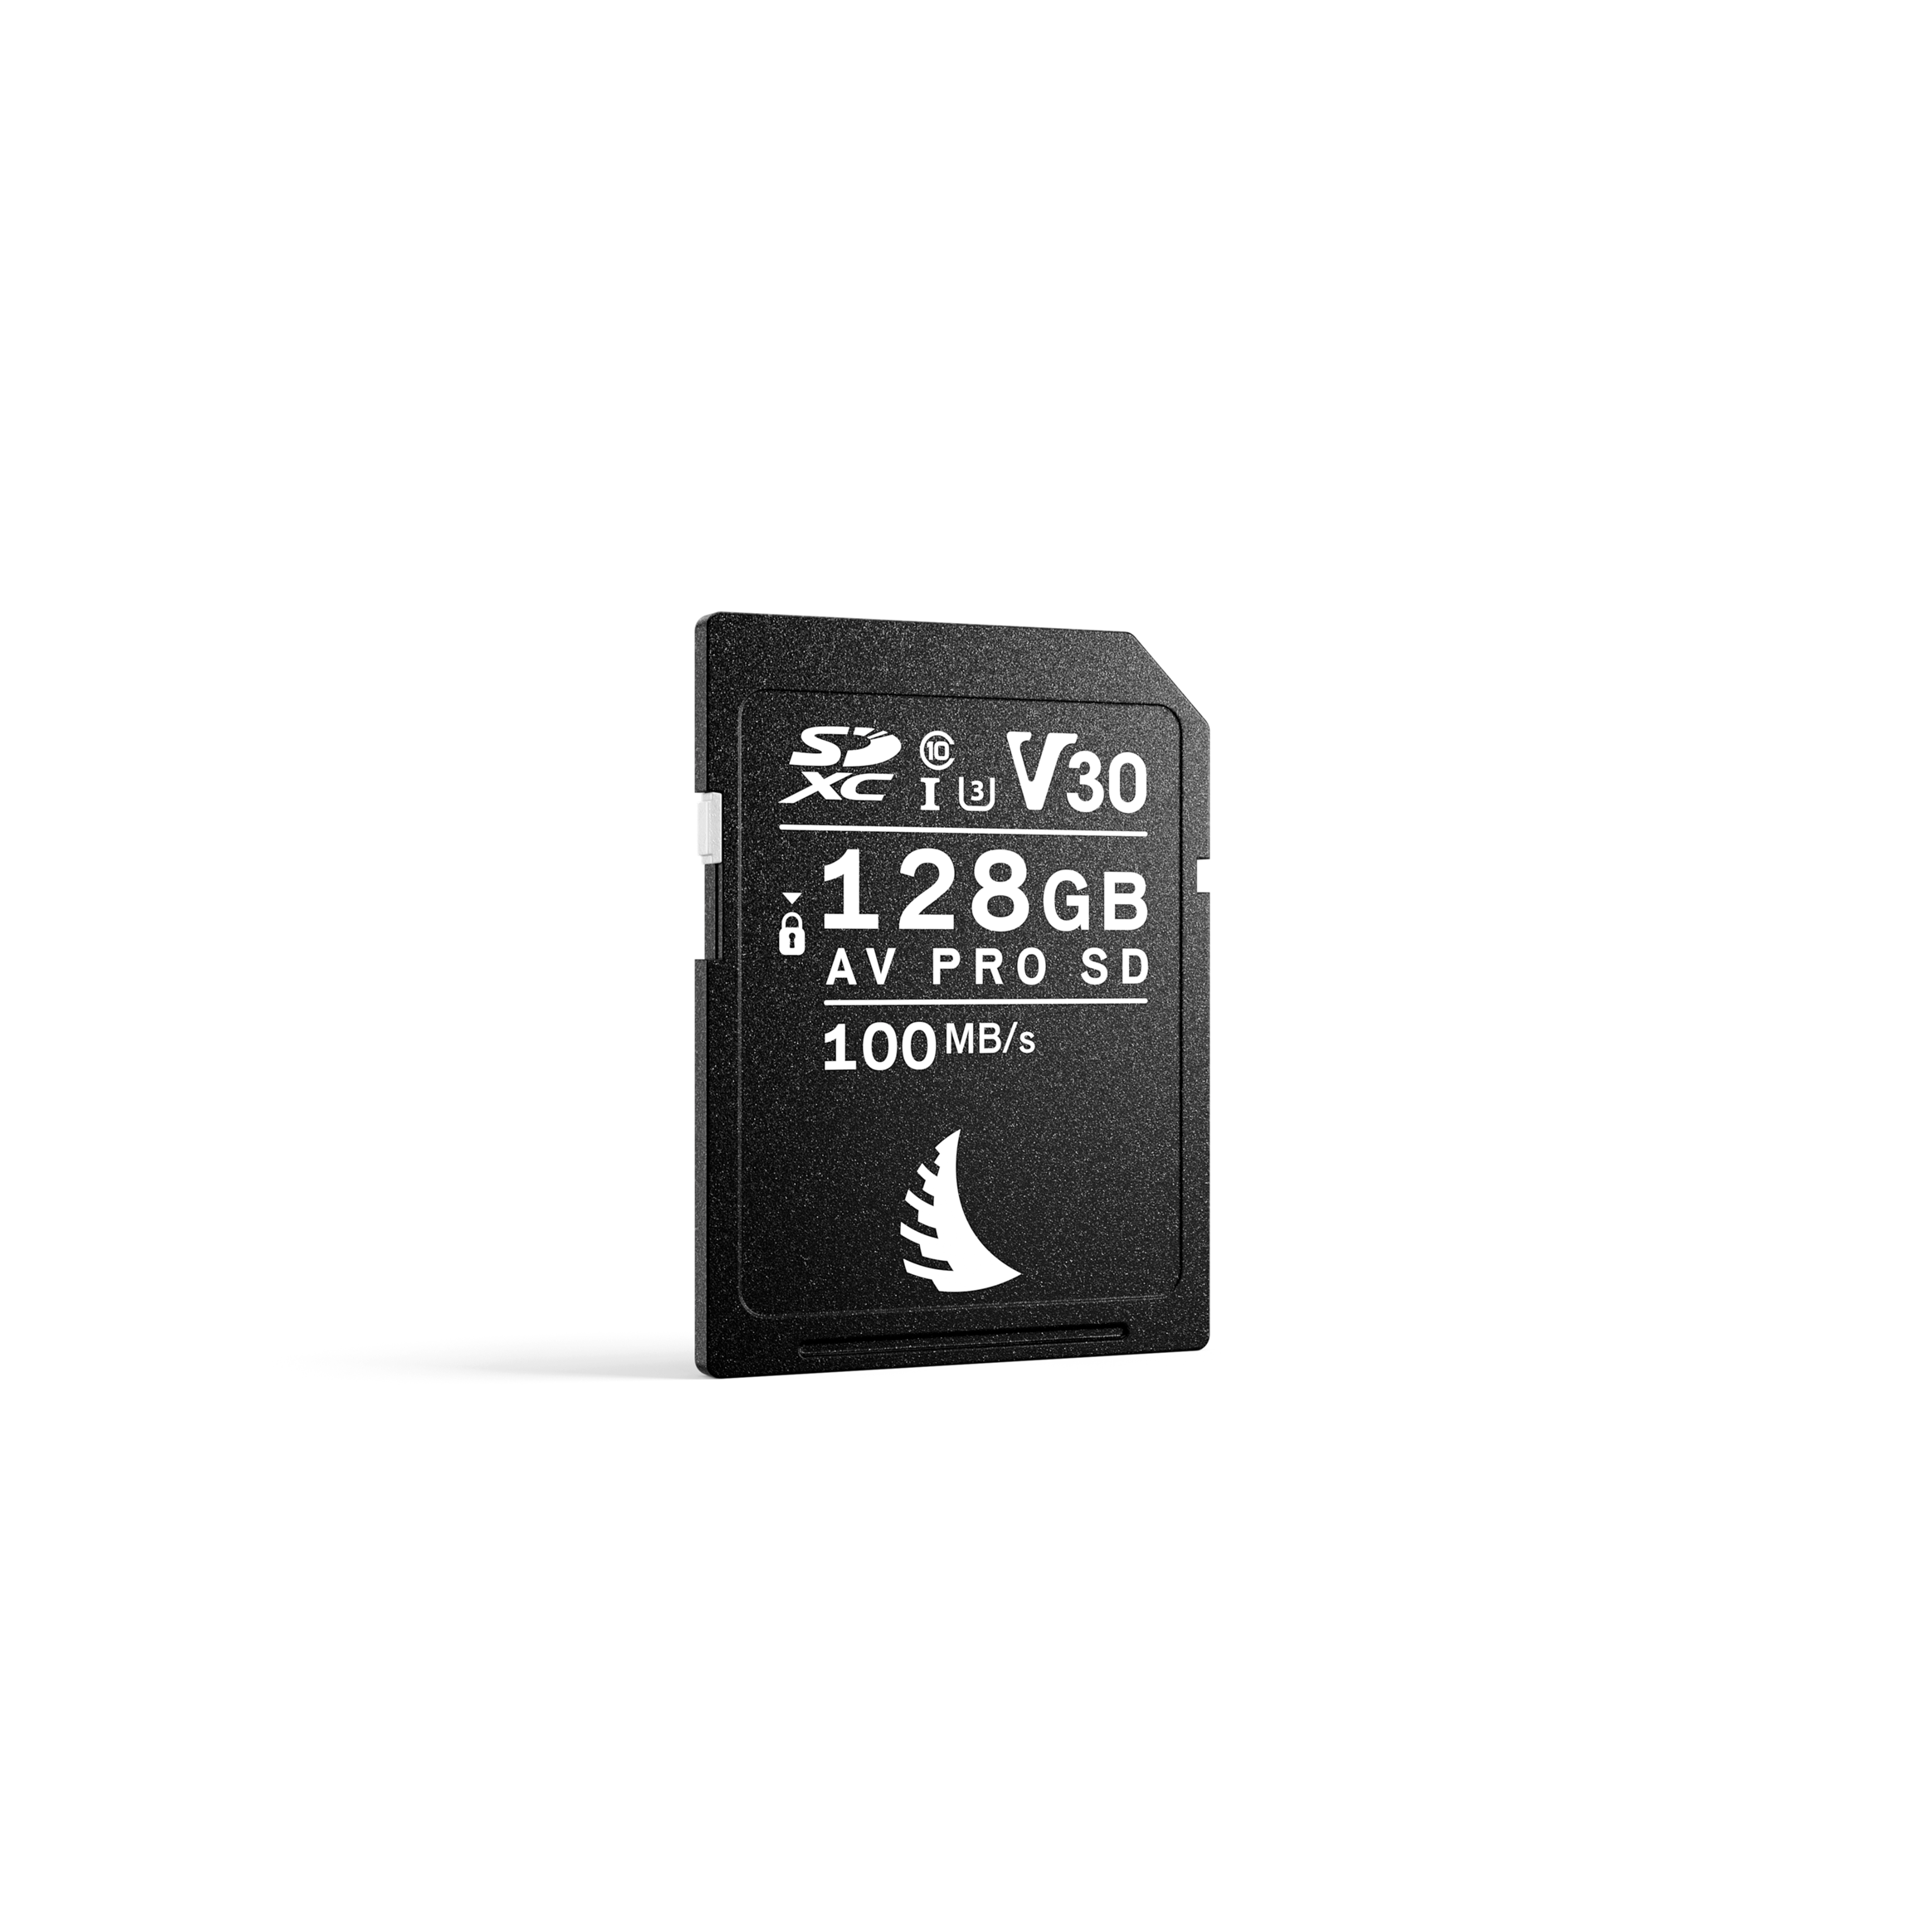 AV Pro SD 128GB V30